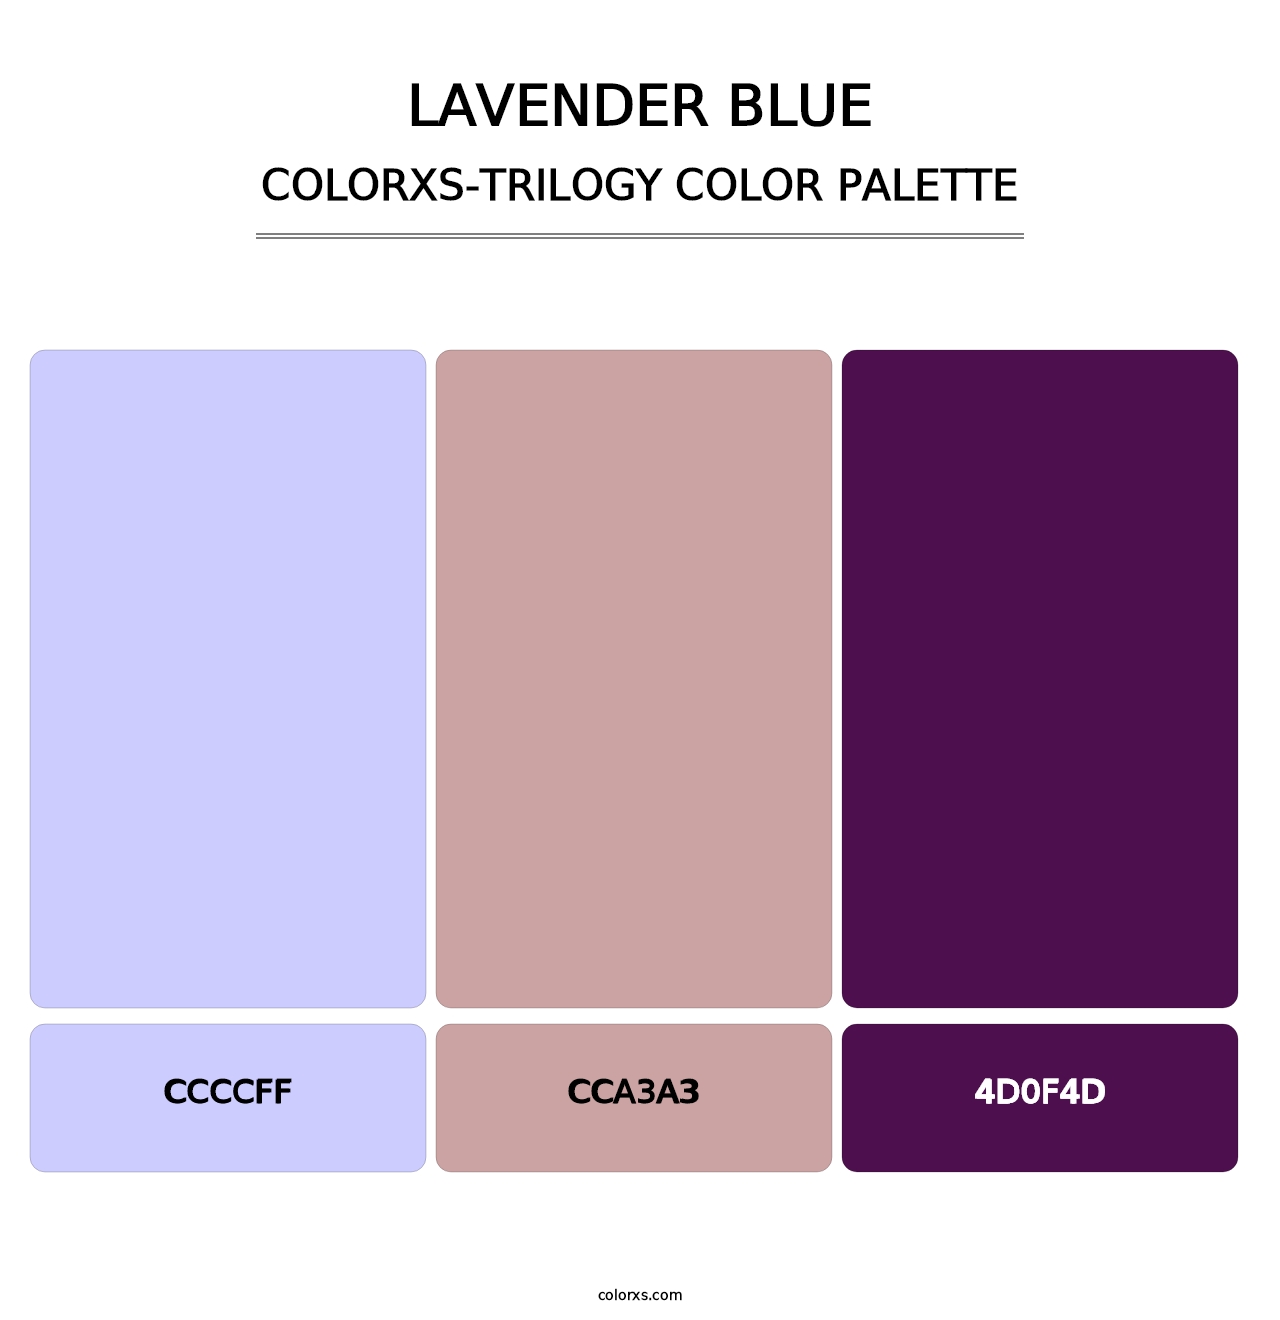 Lavender Blue - Colorxs Trilogy Palette